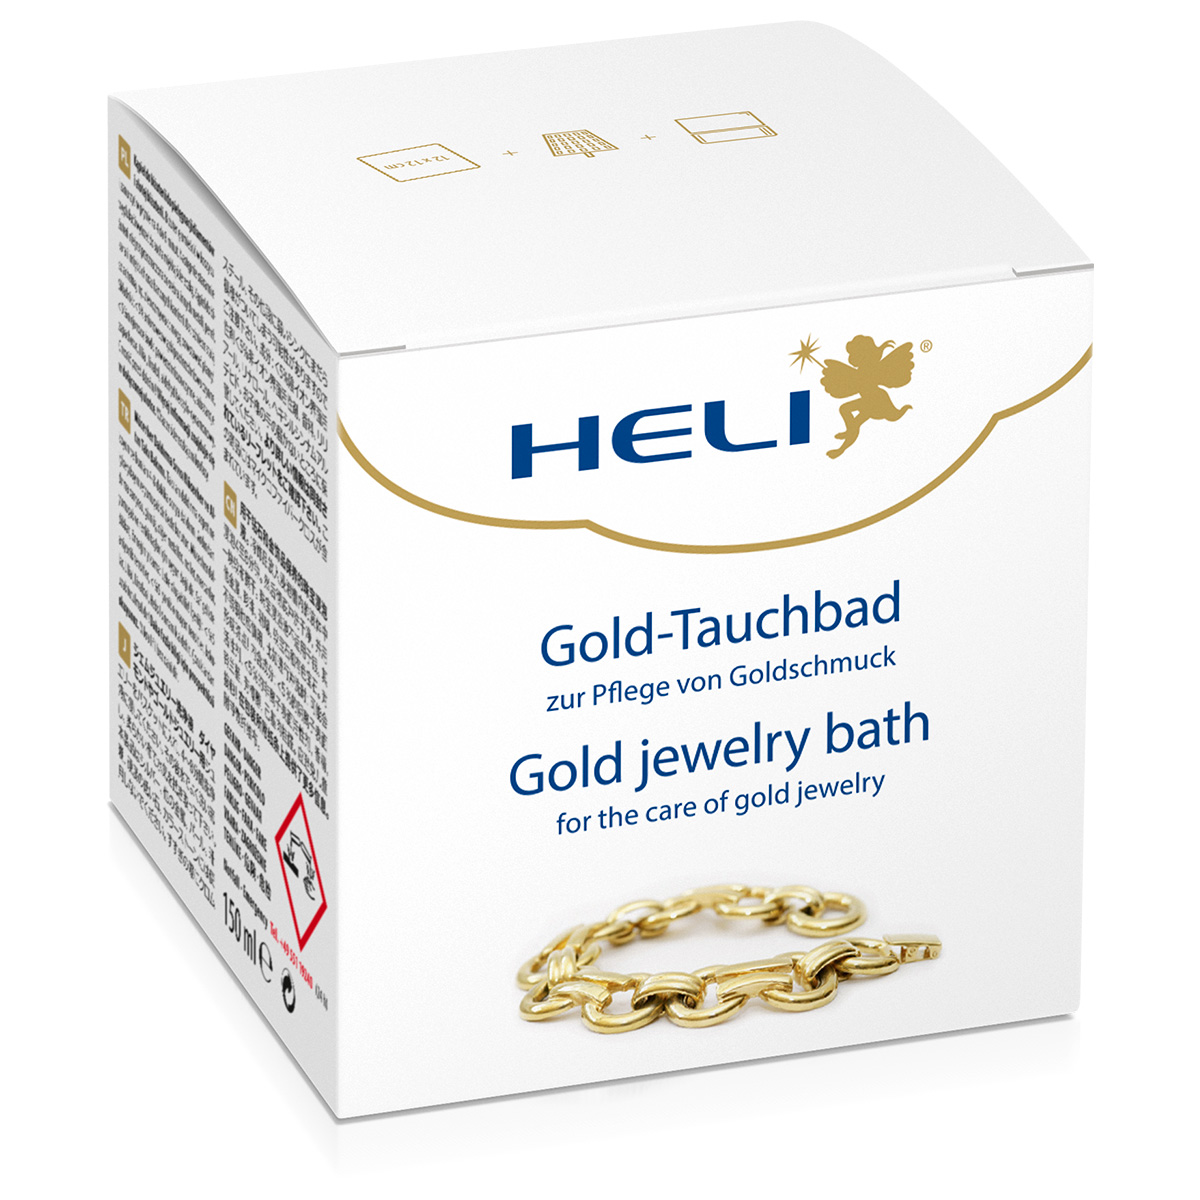 Heli dompelbad goud met wasmandje en verzorgingsdoekje, juweliersverpakking, 150 ml